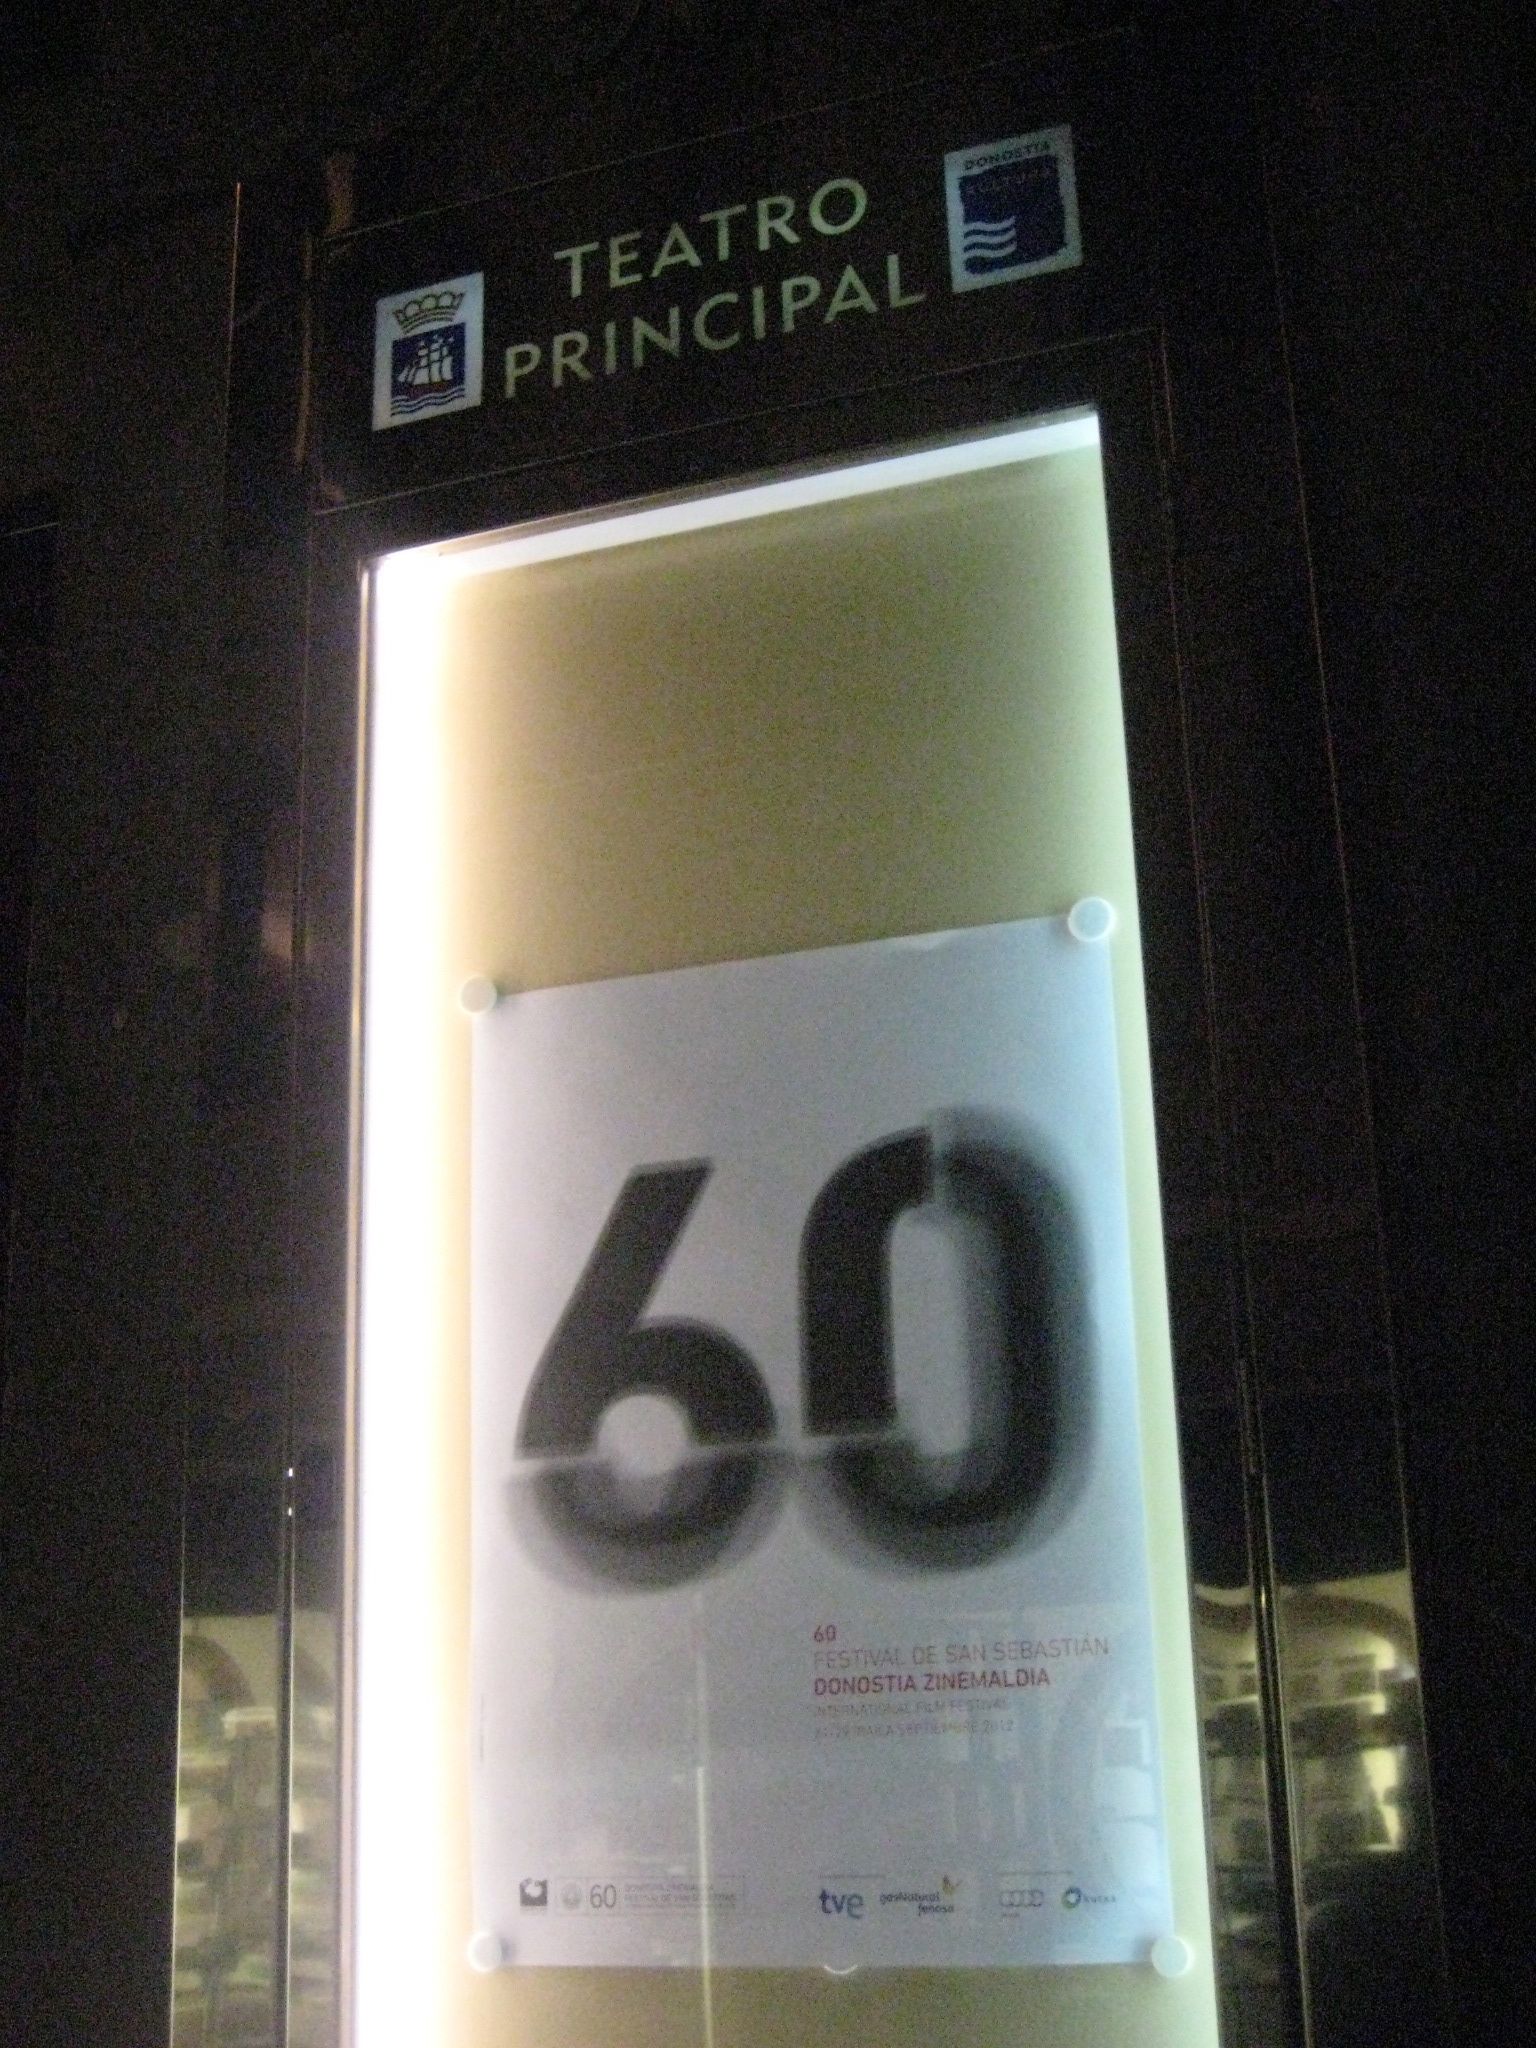 Teatro Principal by Fementido